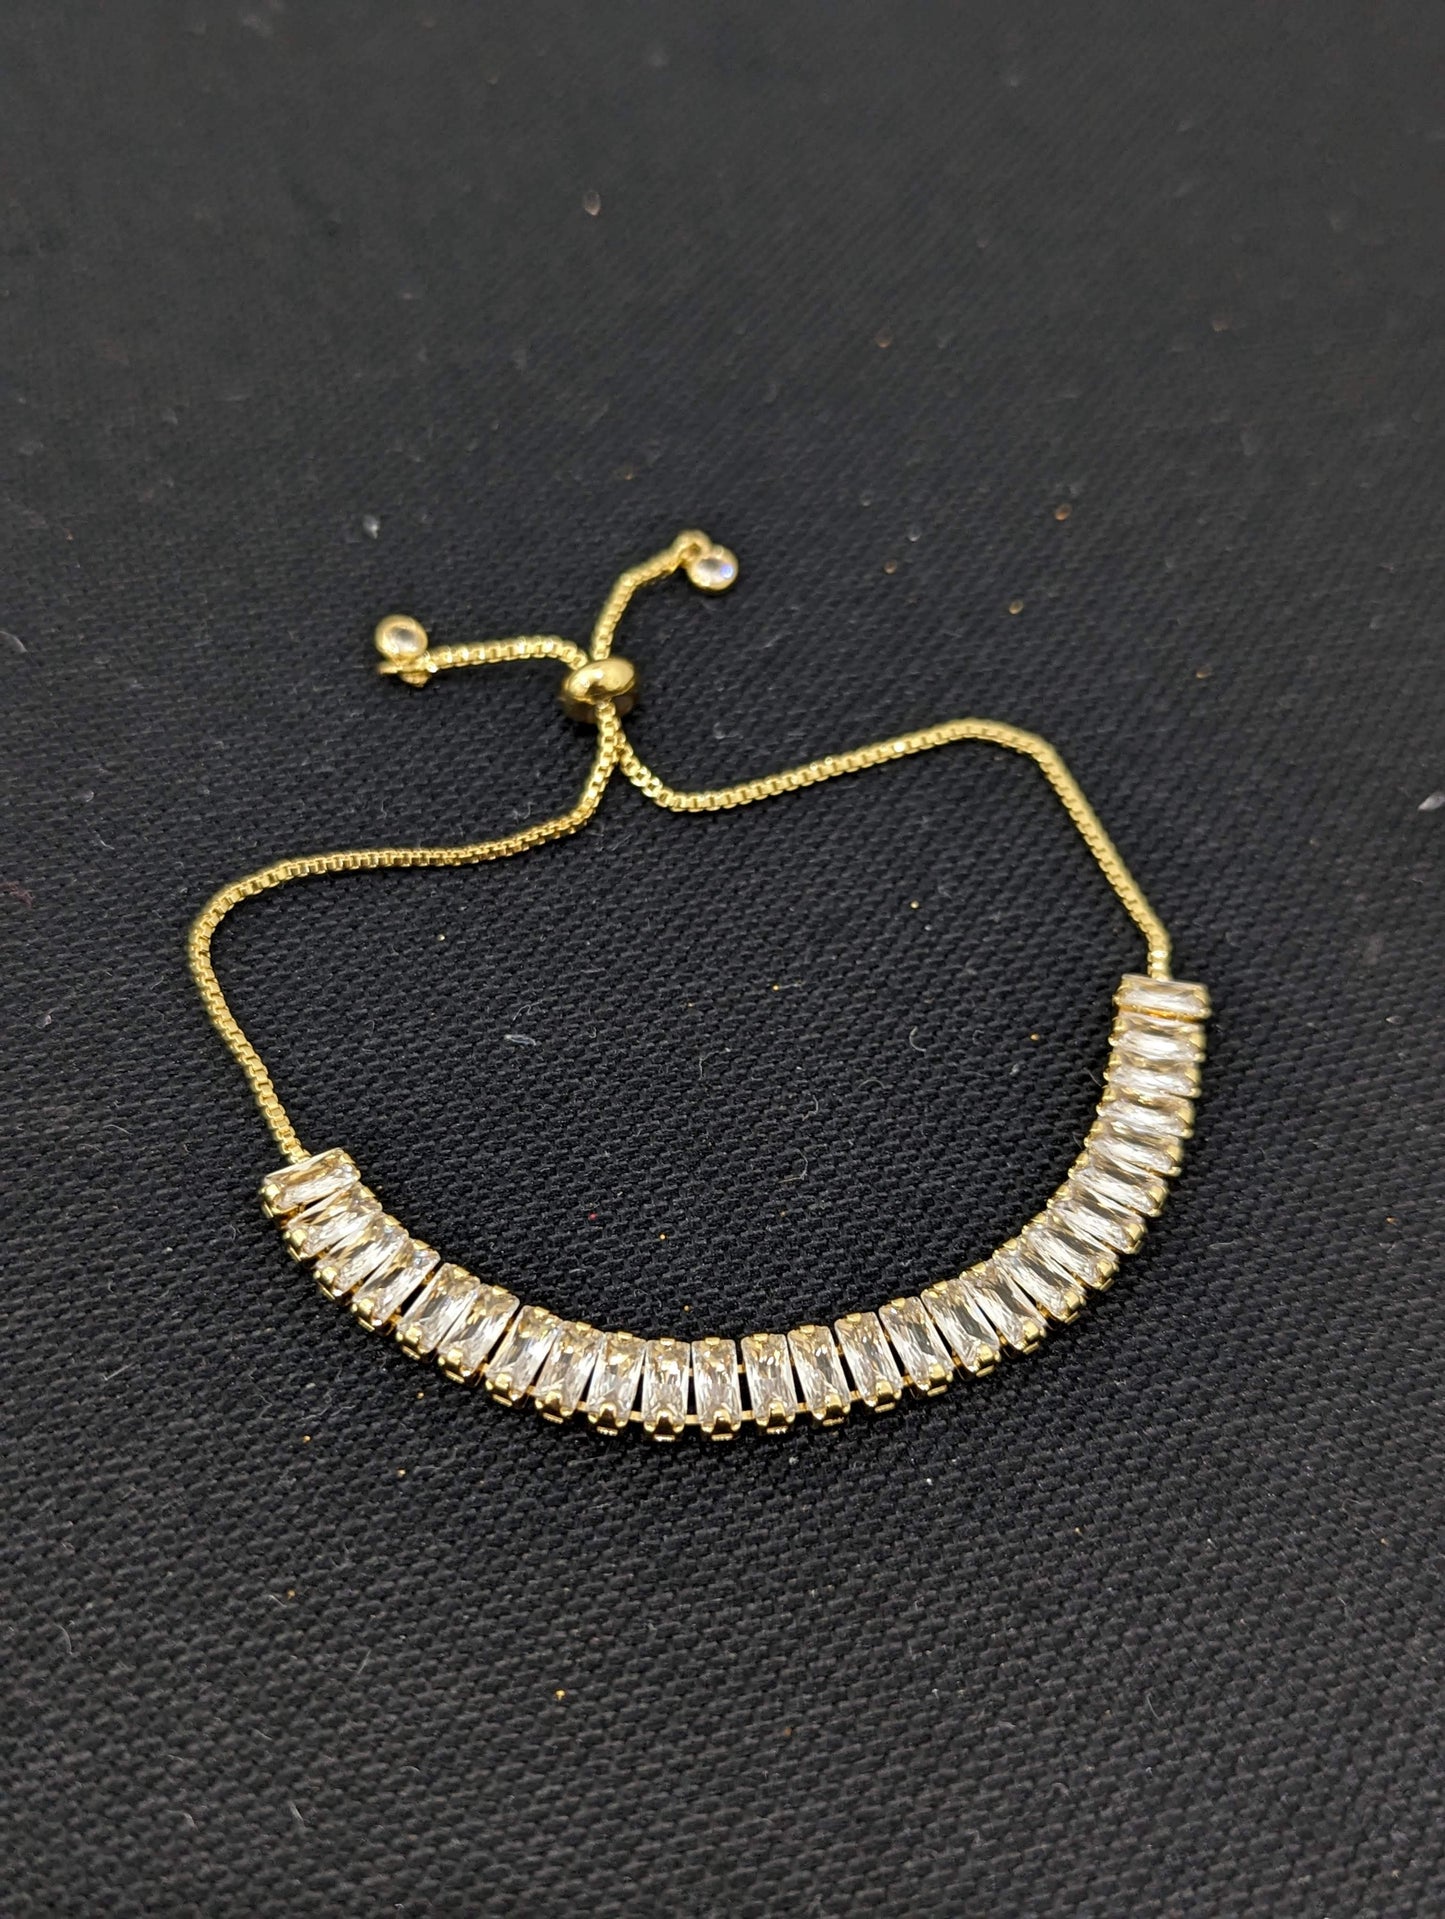 Rectangle CZ gold plated Adjustable Bracelet